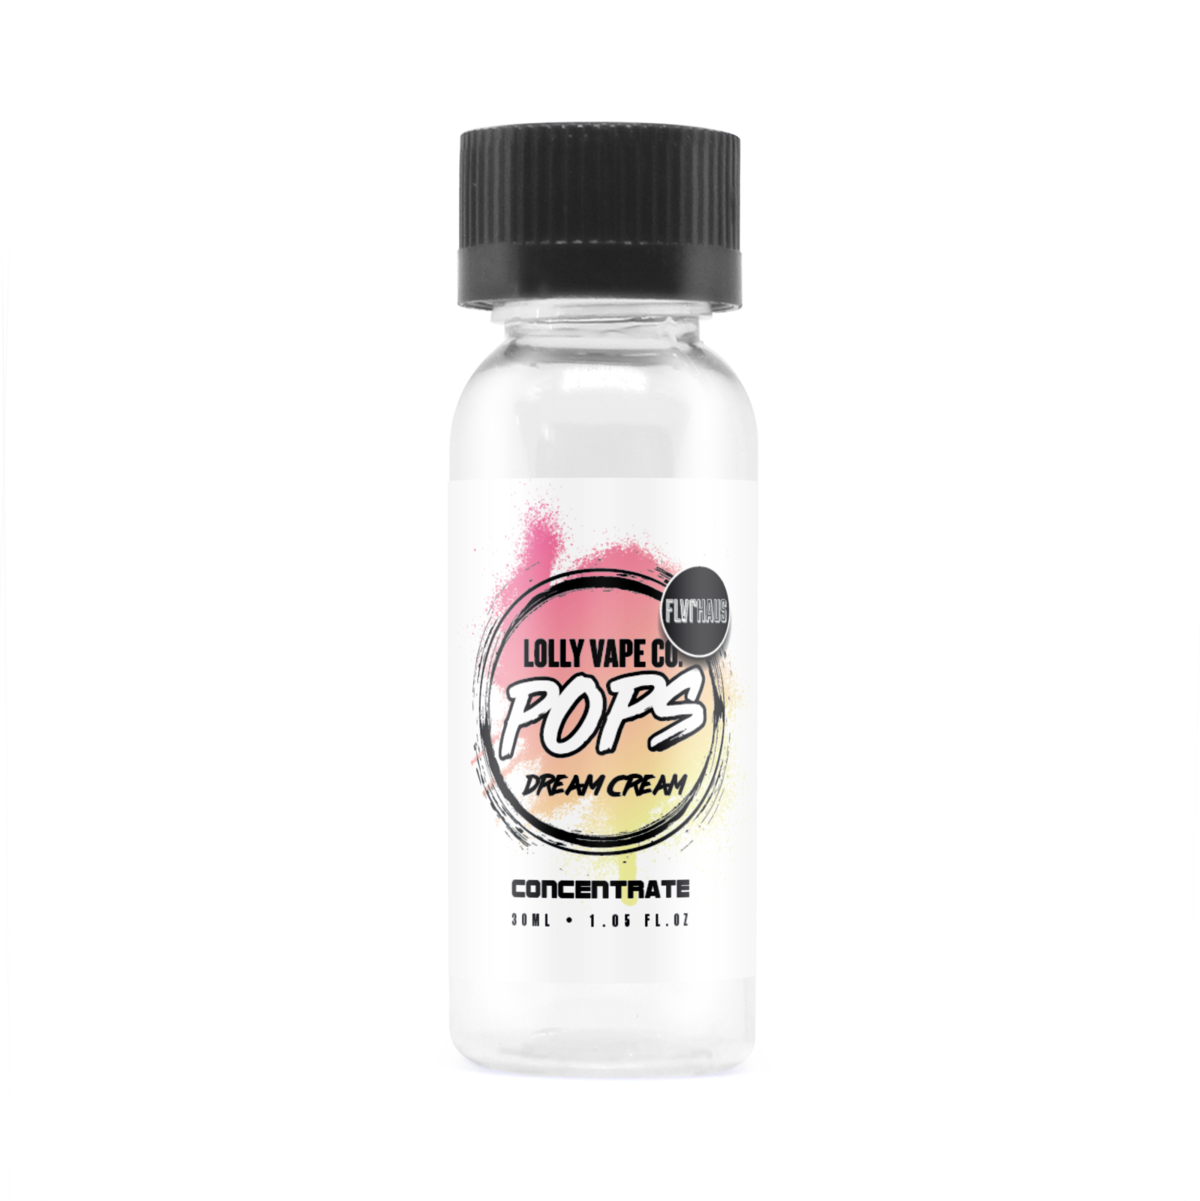 Dream Cream Concentrate E-Liquid by Lolly Vape Co 30ml